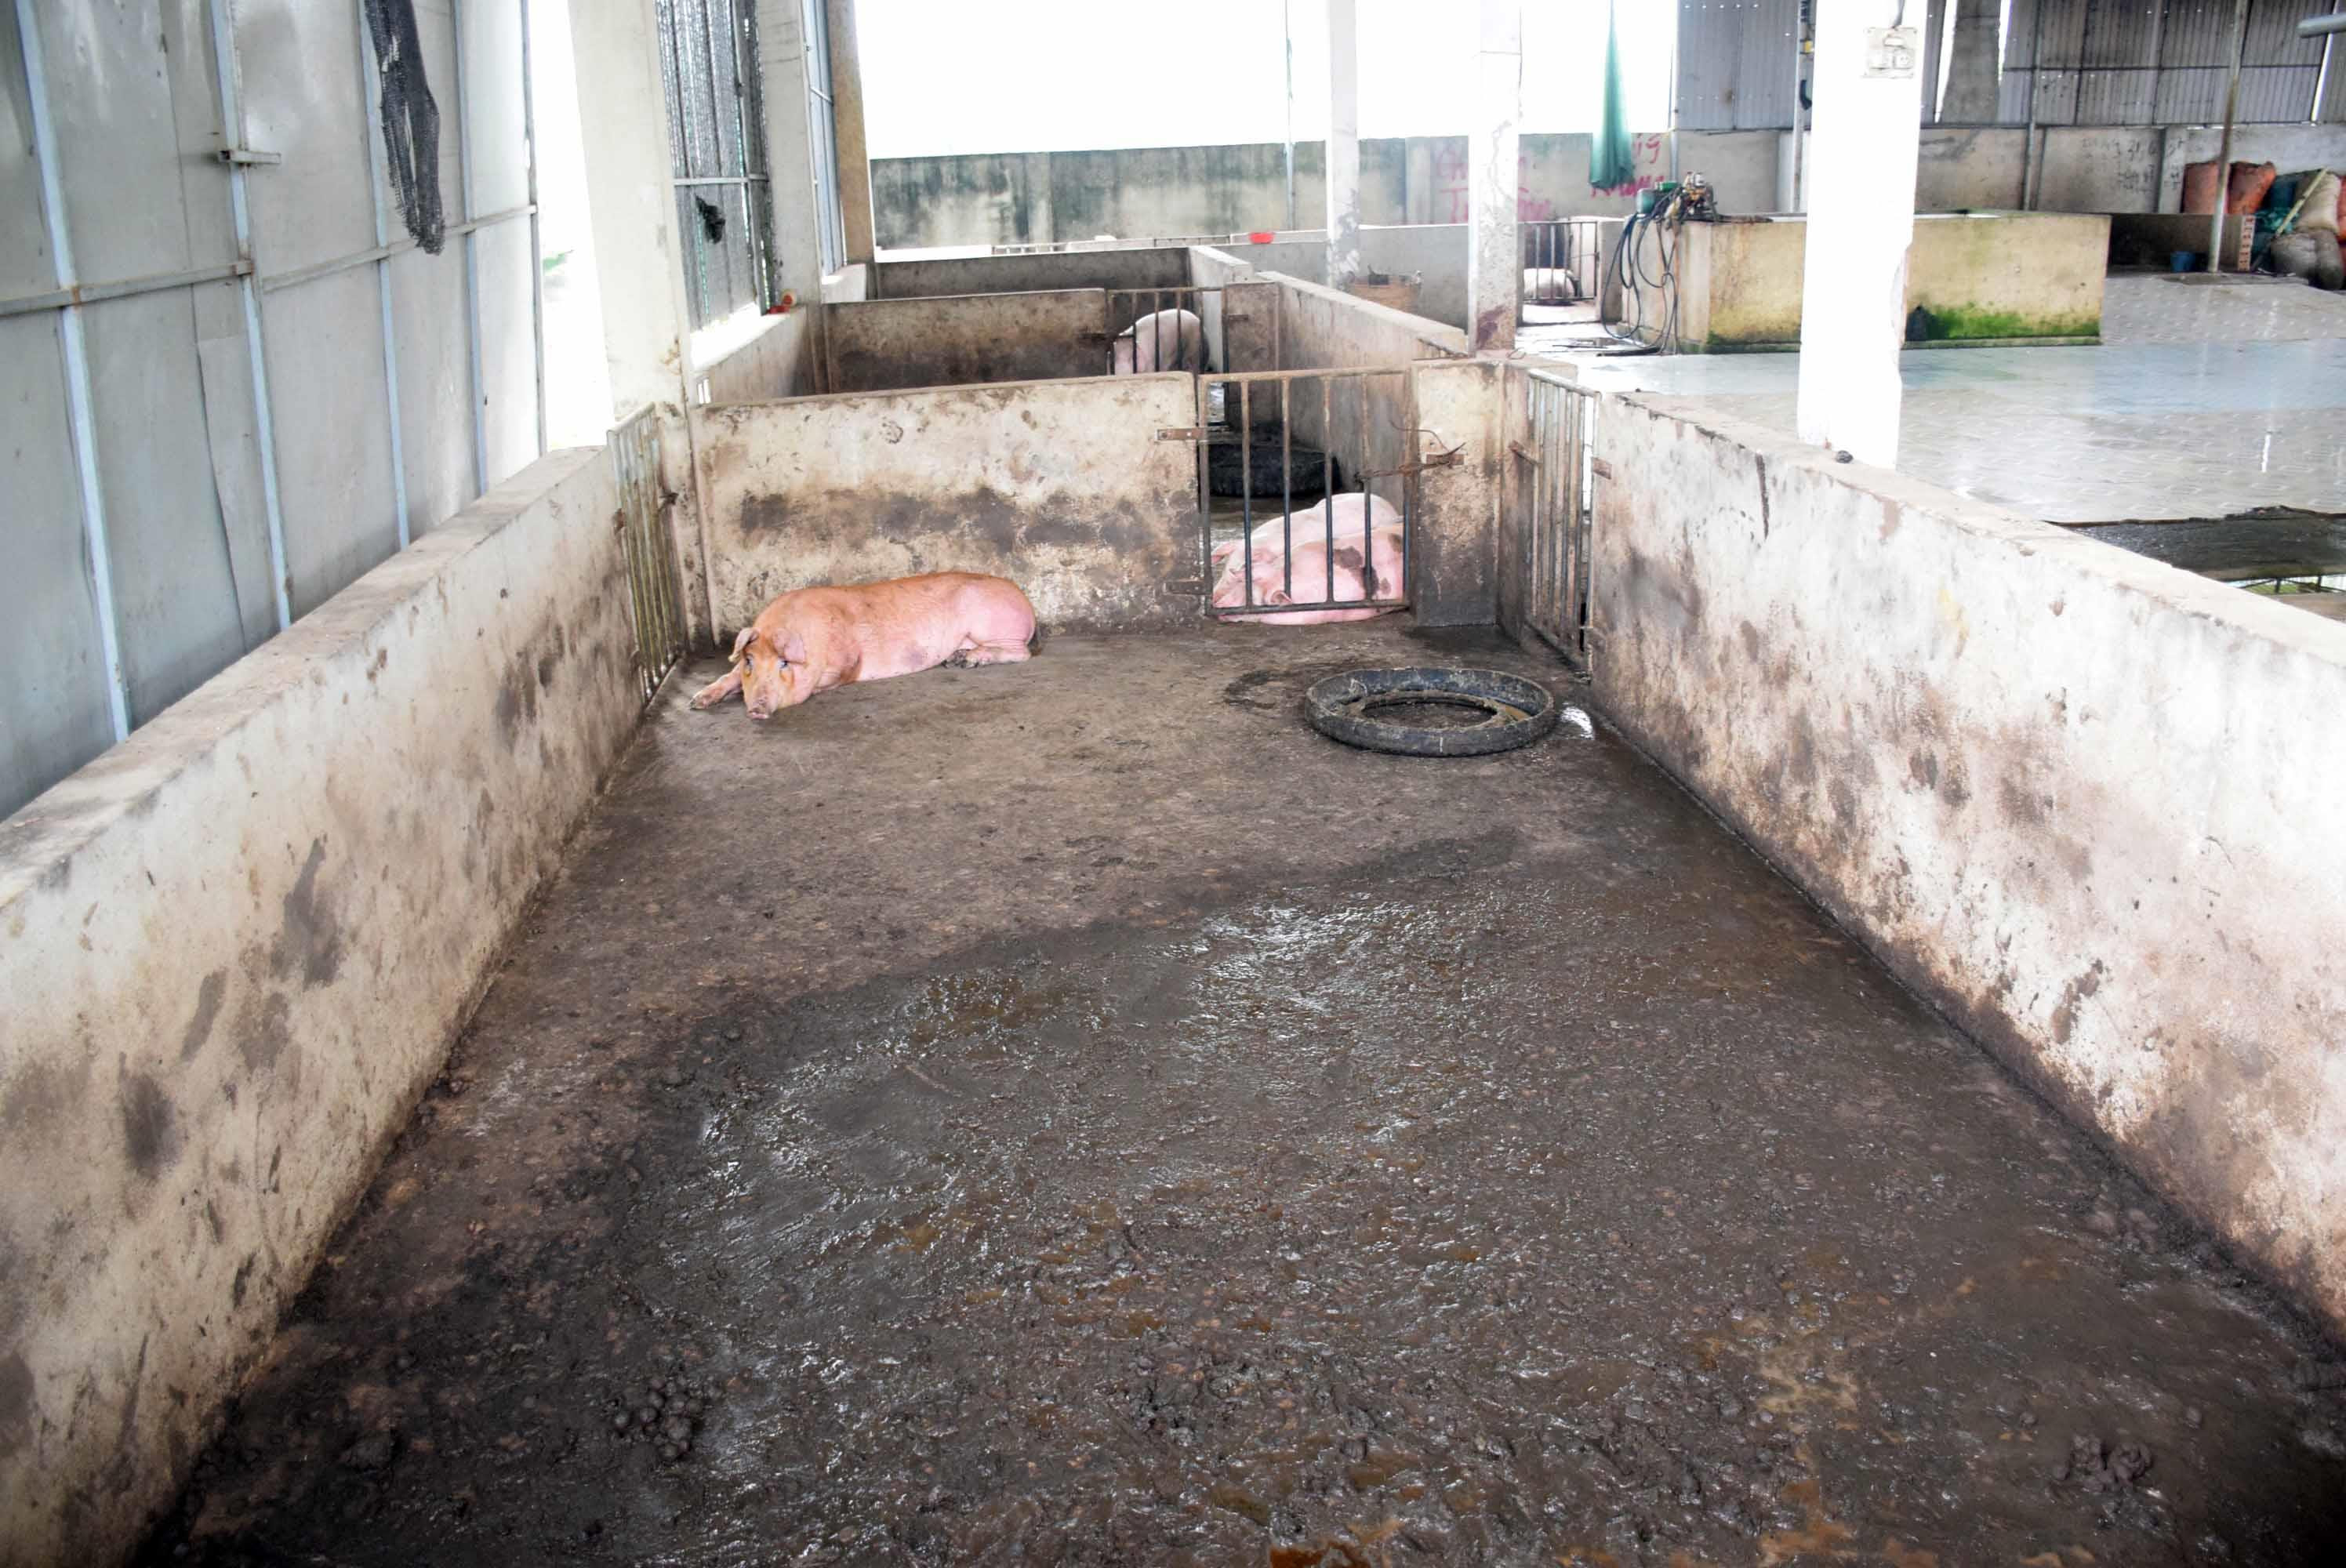 Khu vực nhốt lợn cũng không được vệ sinh thường xuyên. Ảnh: Xuân Hoàng